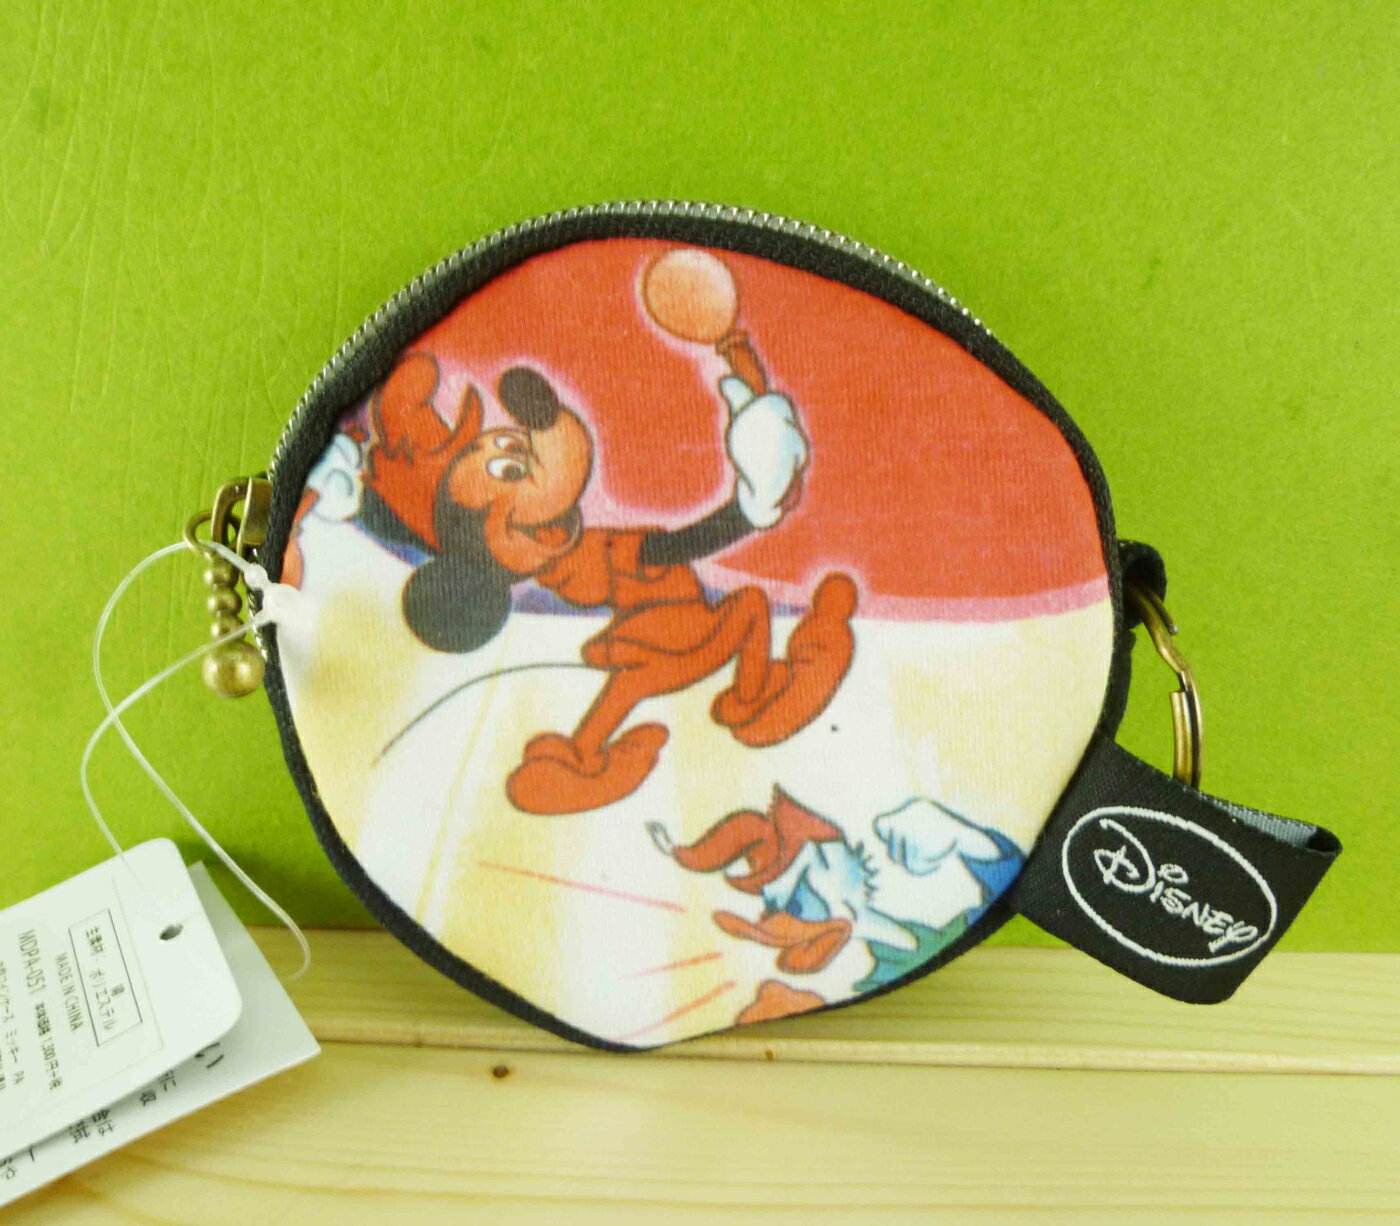 【震撼精品百貨】Micky Mouse 米奇/米妮 造型零錢包-圓魔法 震撼日式精品百貨